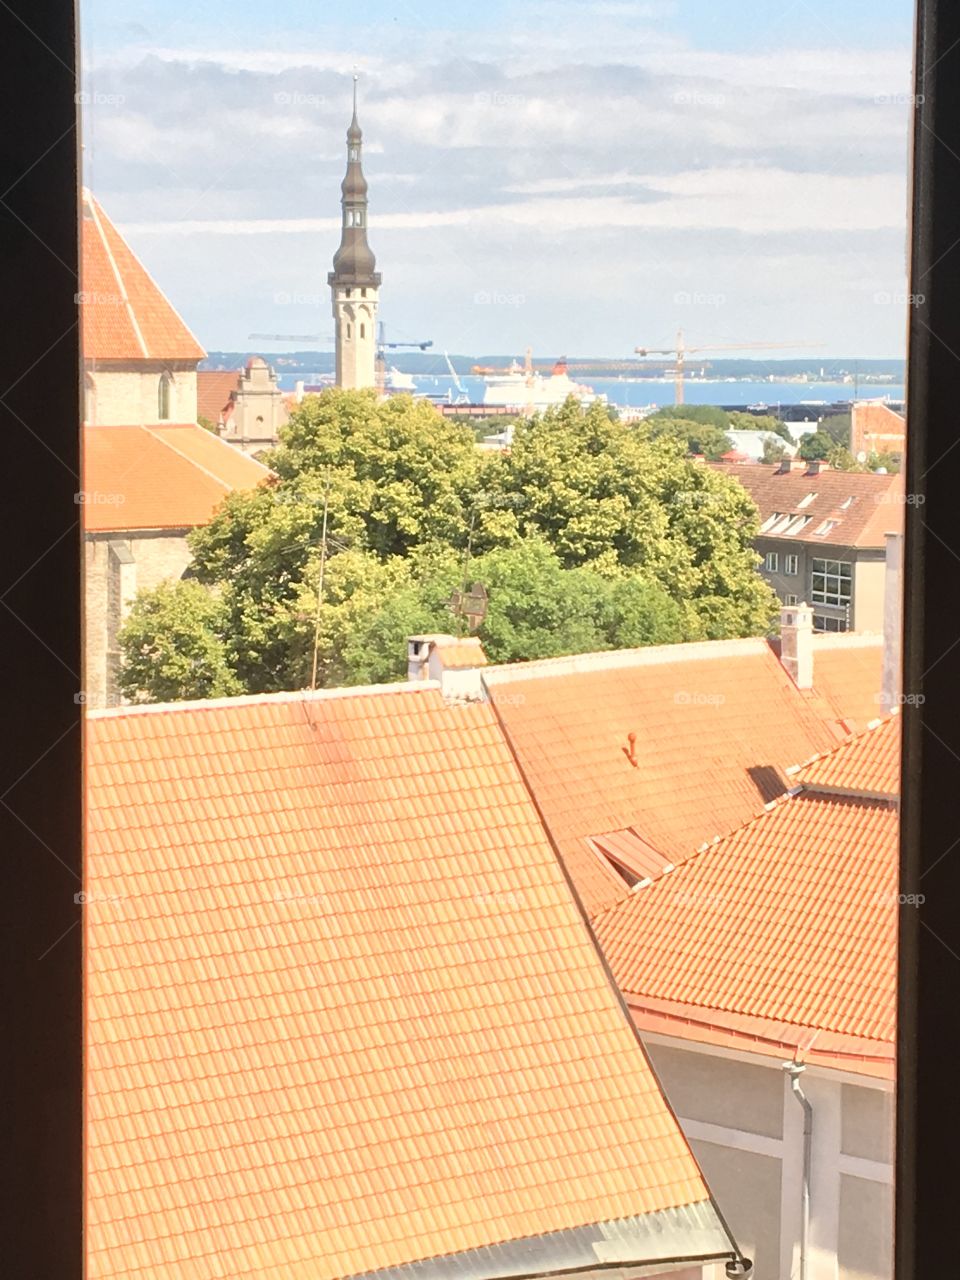 Rooftops Tallinn 